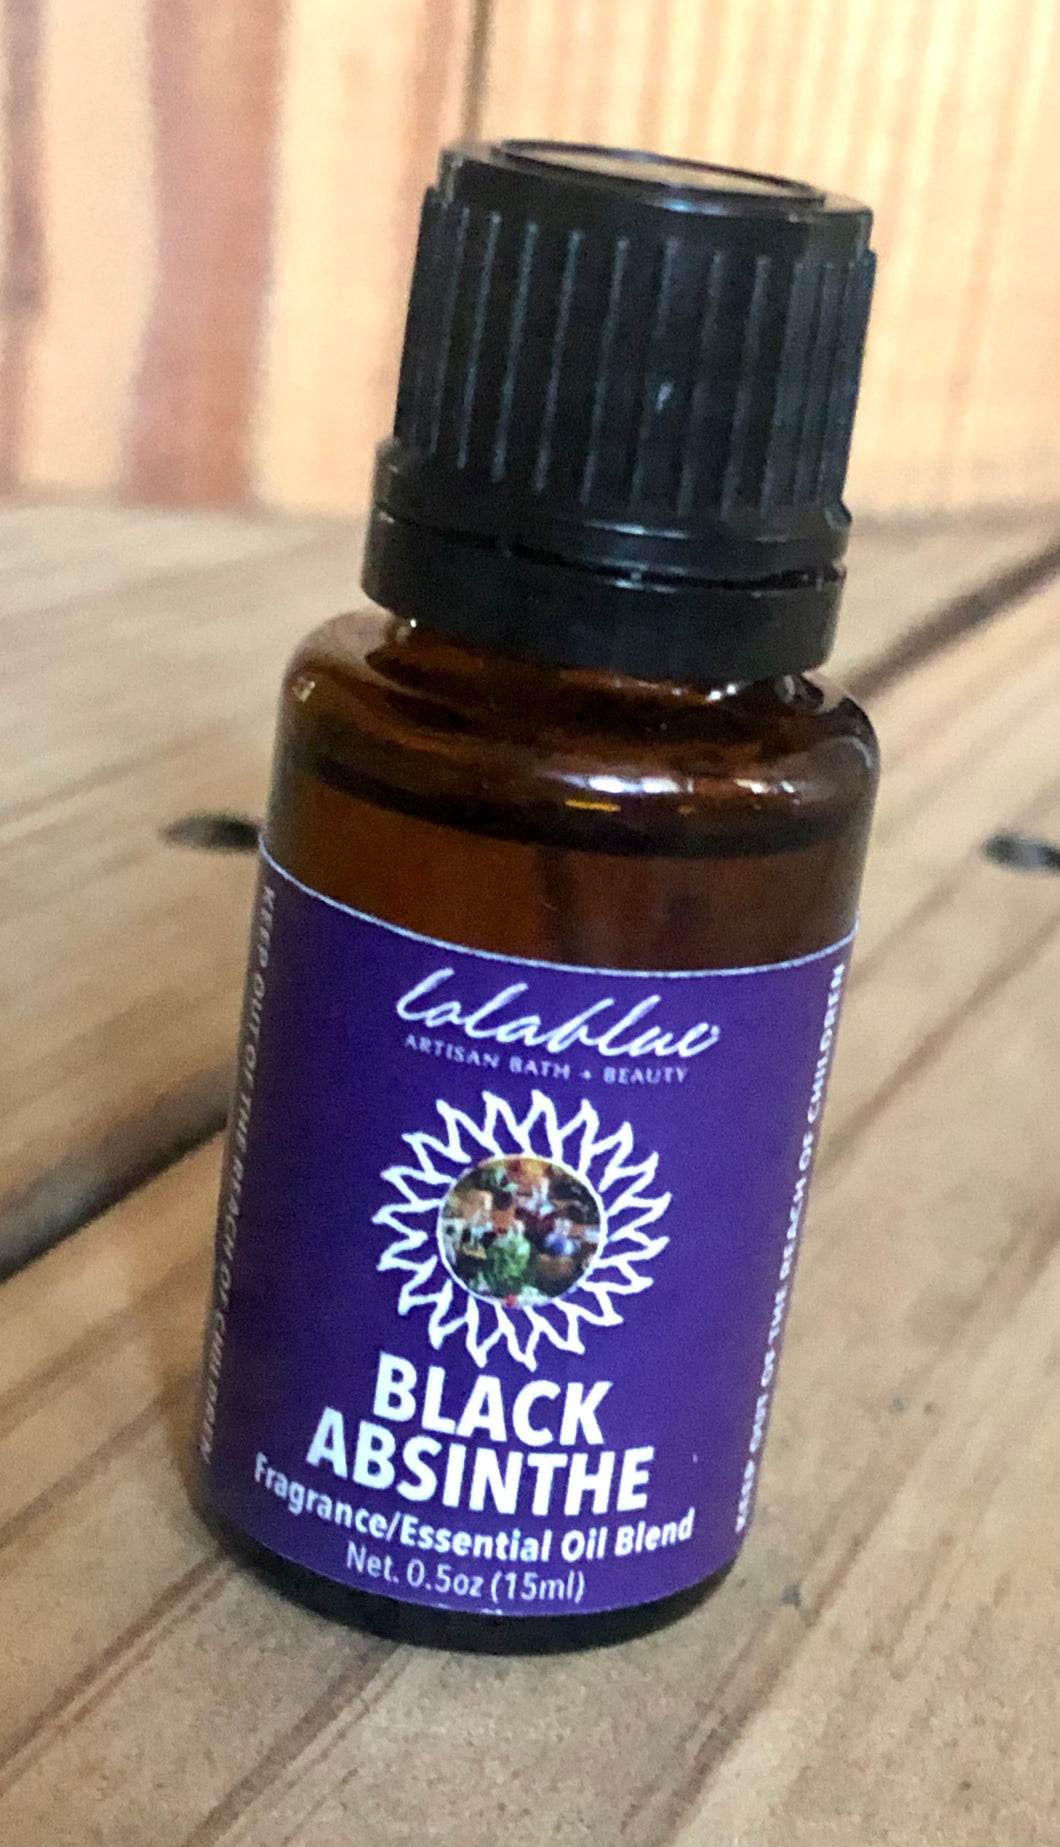 Black Absinthe Fragrance Oil Blend